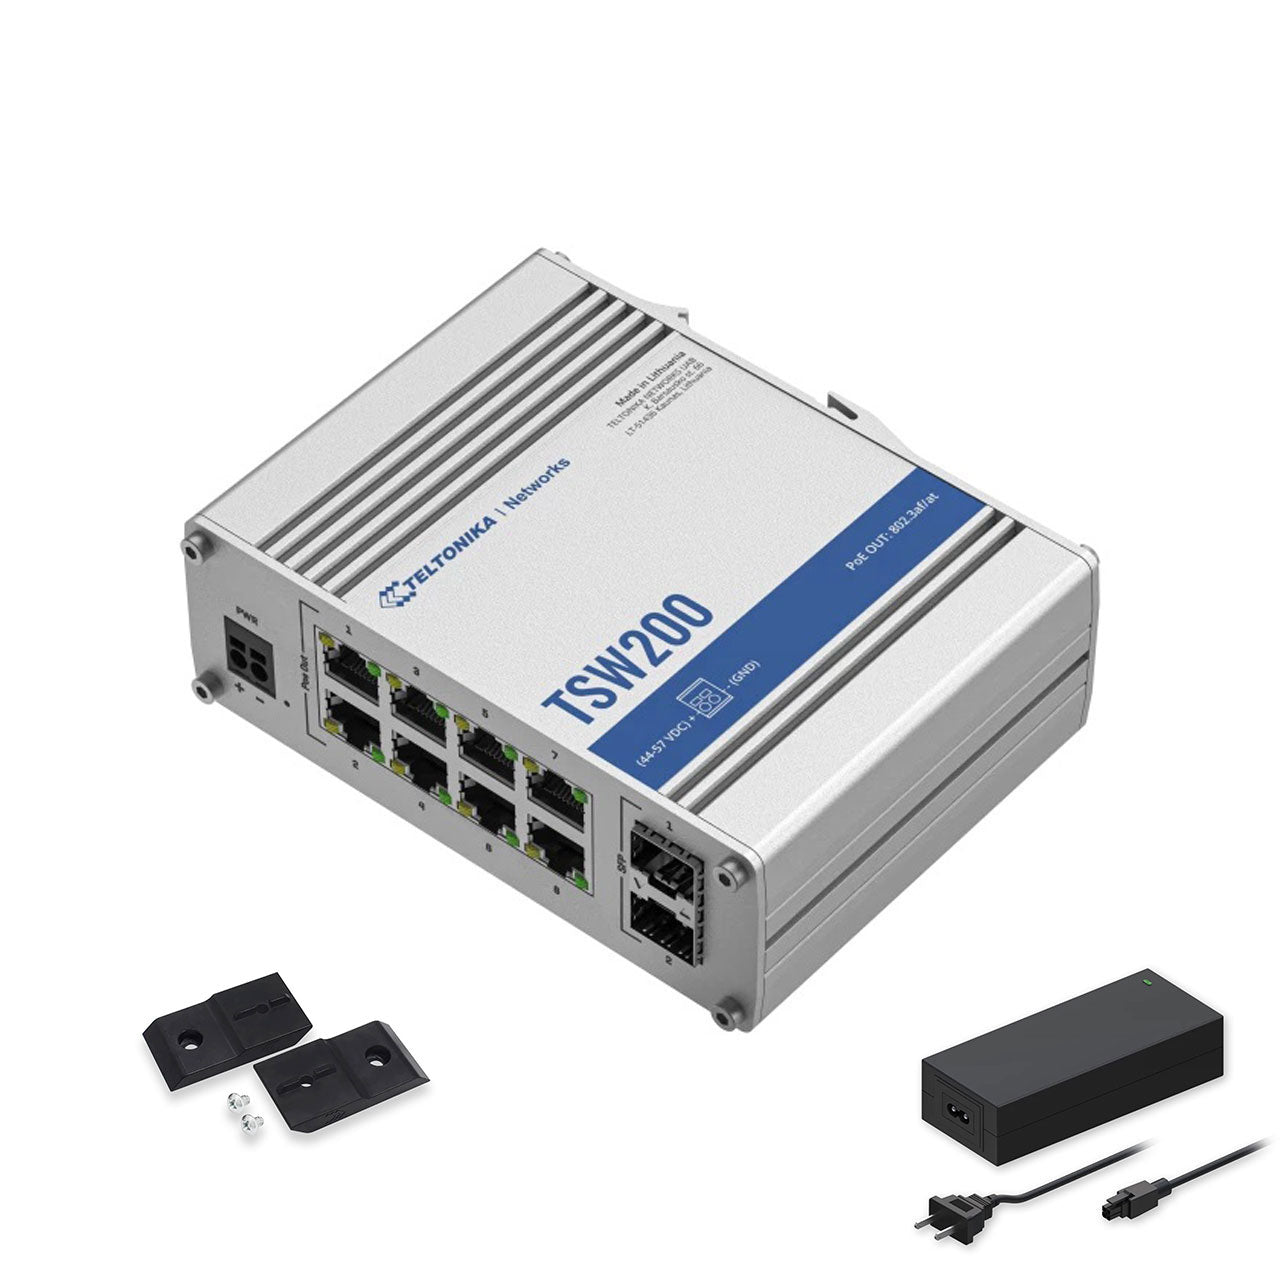 Teltonika TSW200000010 - TWS200 Unmannaged PoE+ switch 5x Gigabit Ethernet ports